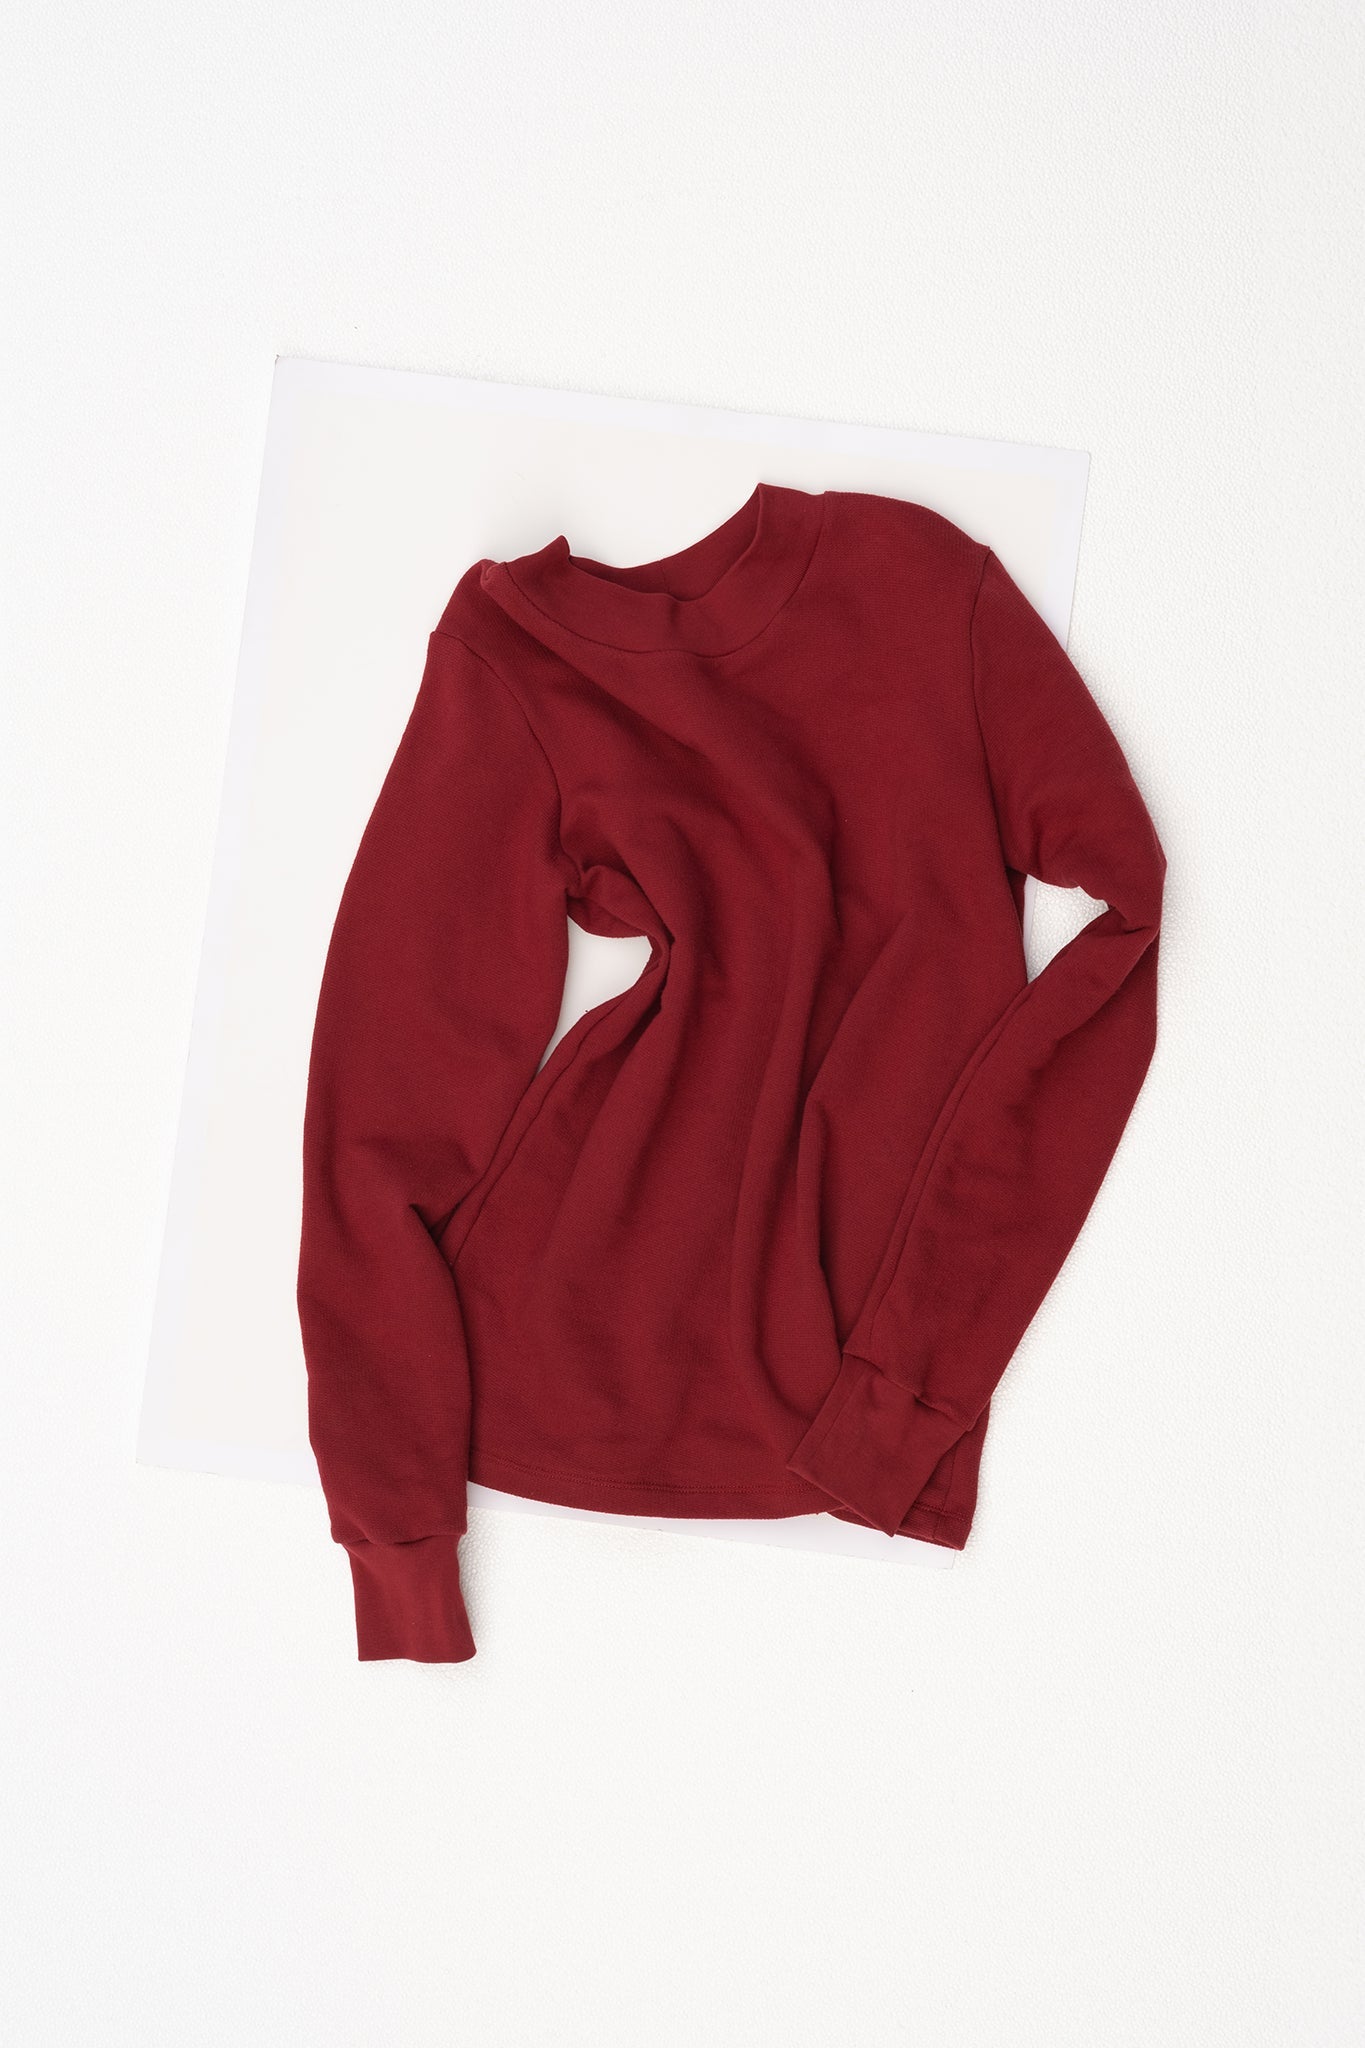 A.33 Garnet Sweater in Good Earth Australian Cotton